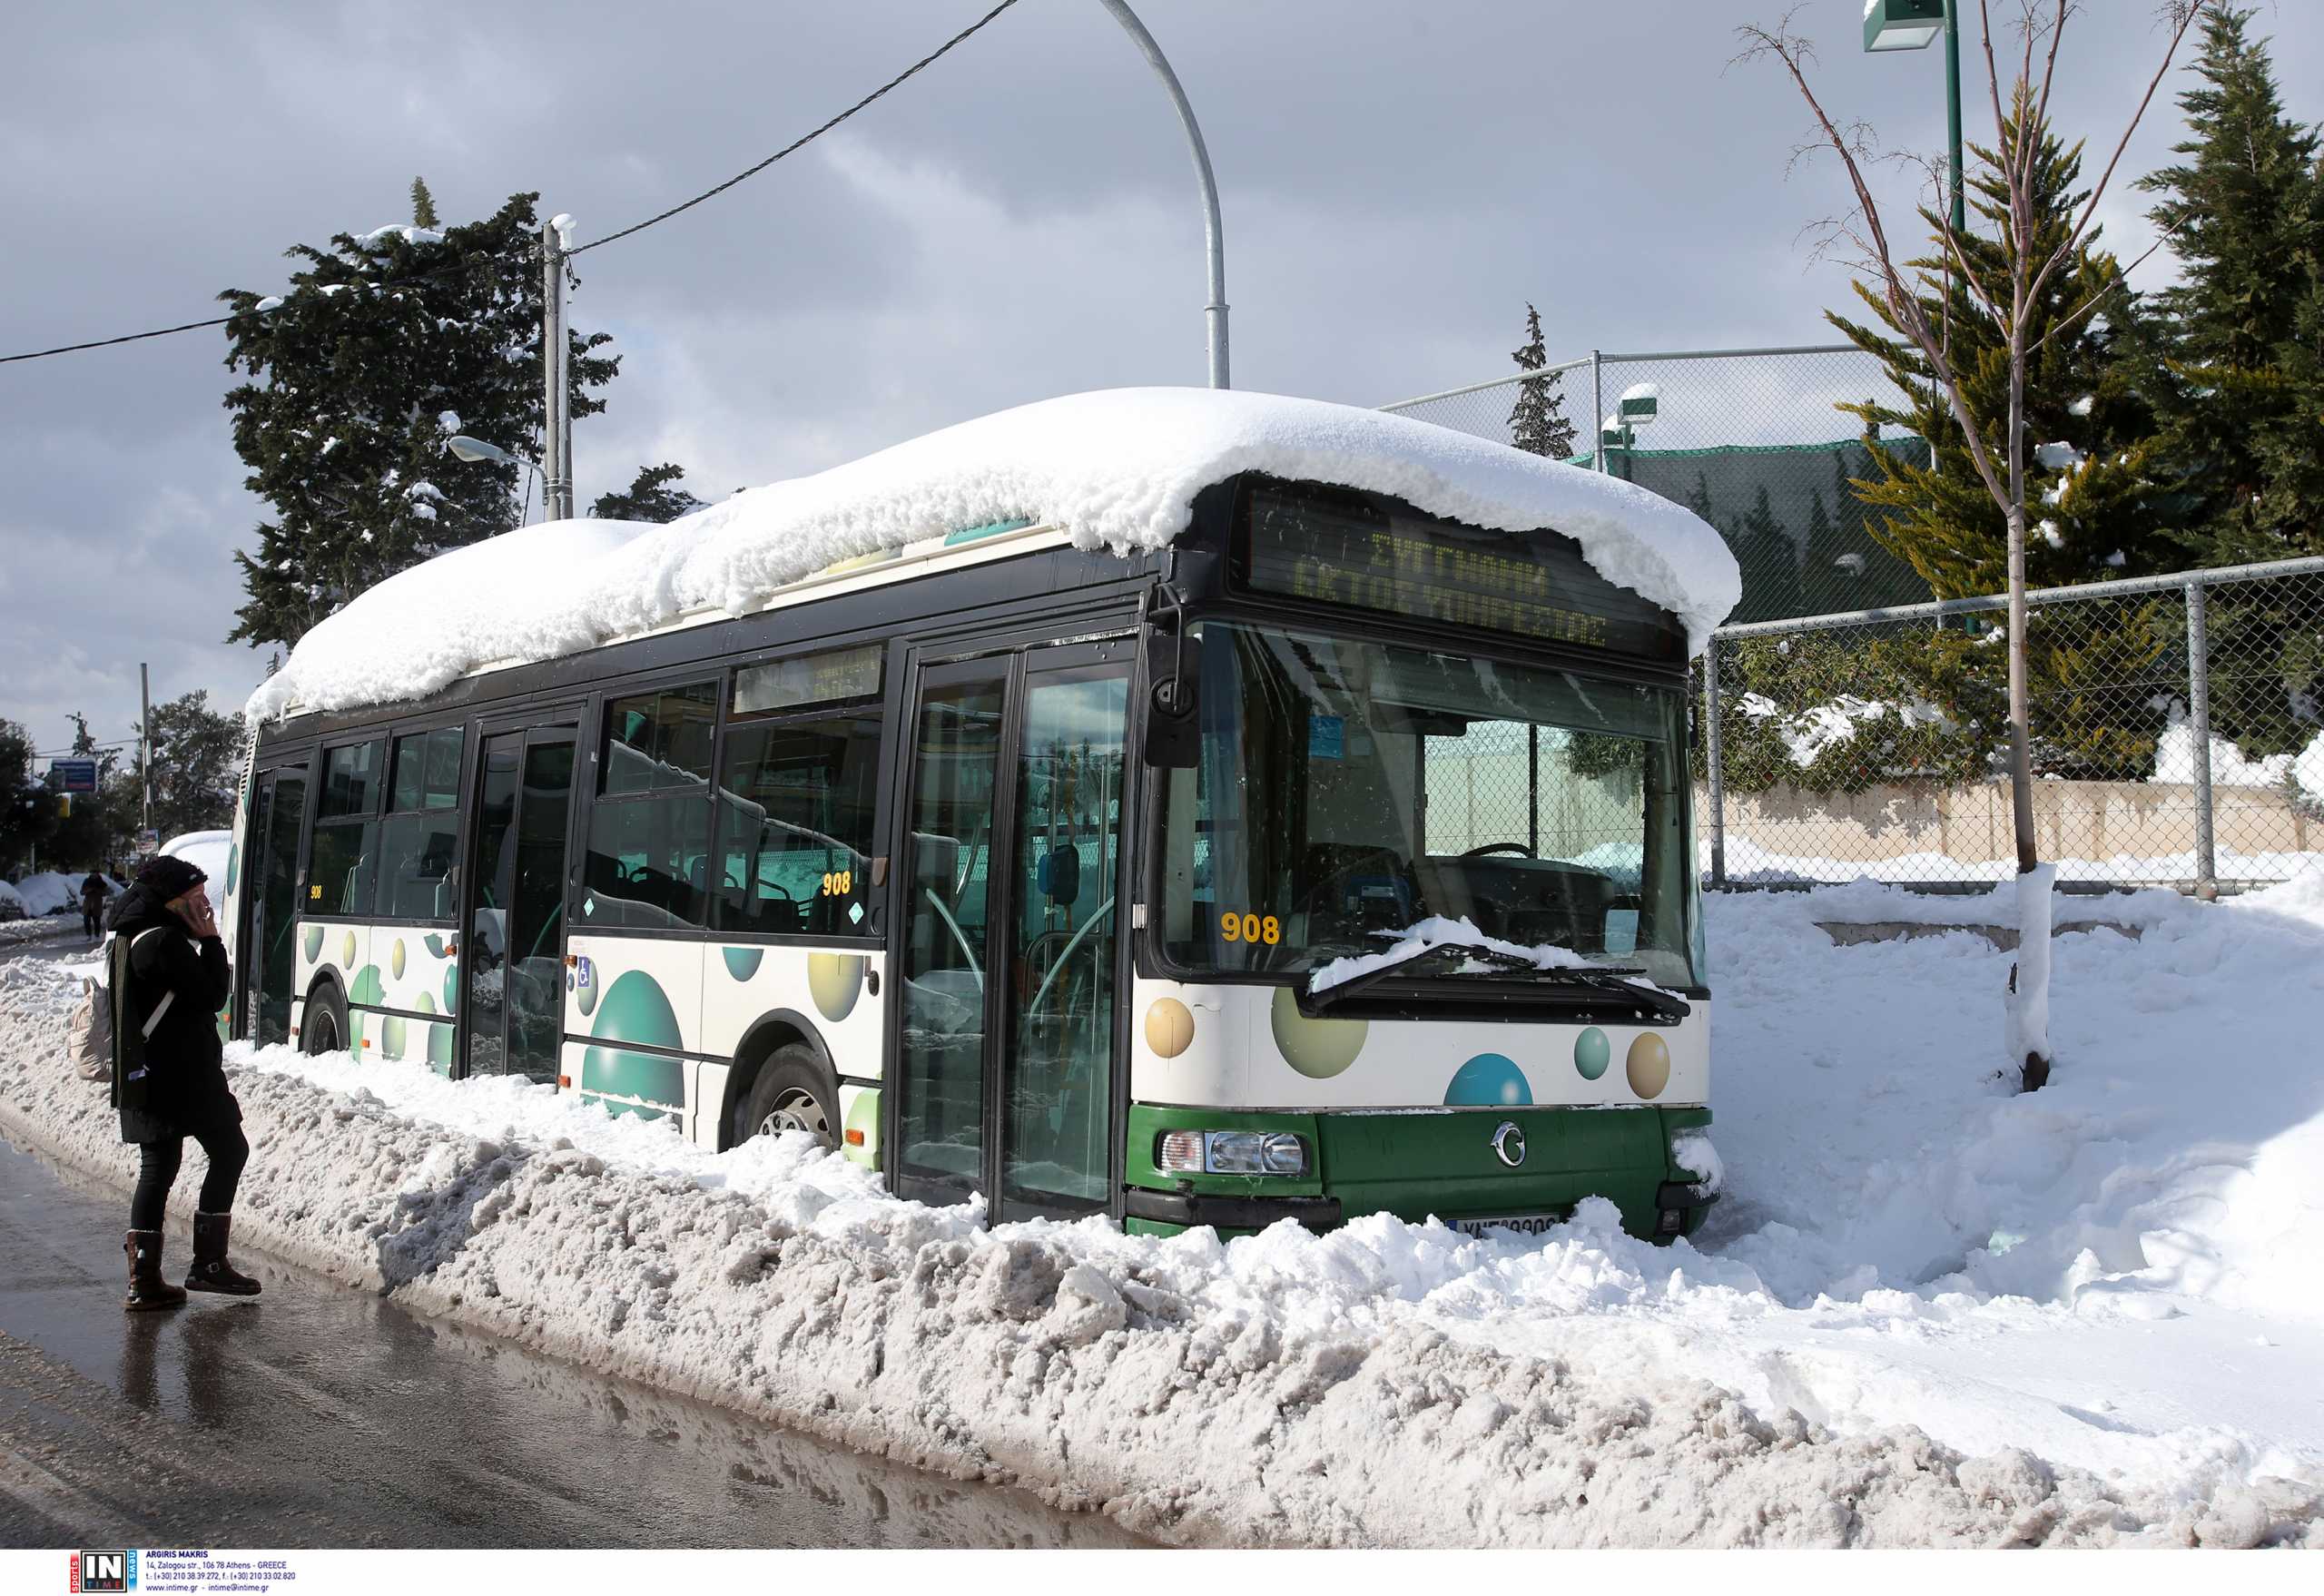 Αποσύρονται σταδιακά λεωφορεία και τρόλεϊ γιατί γλιστράει ο δρόμος – Πίνακες